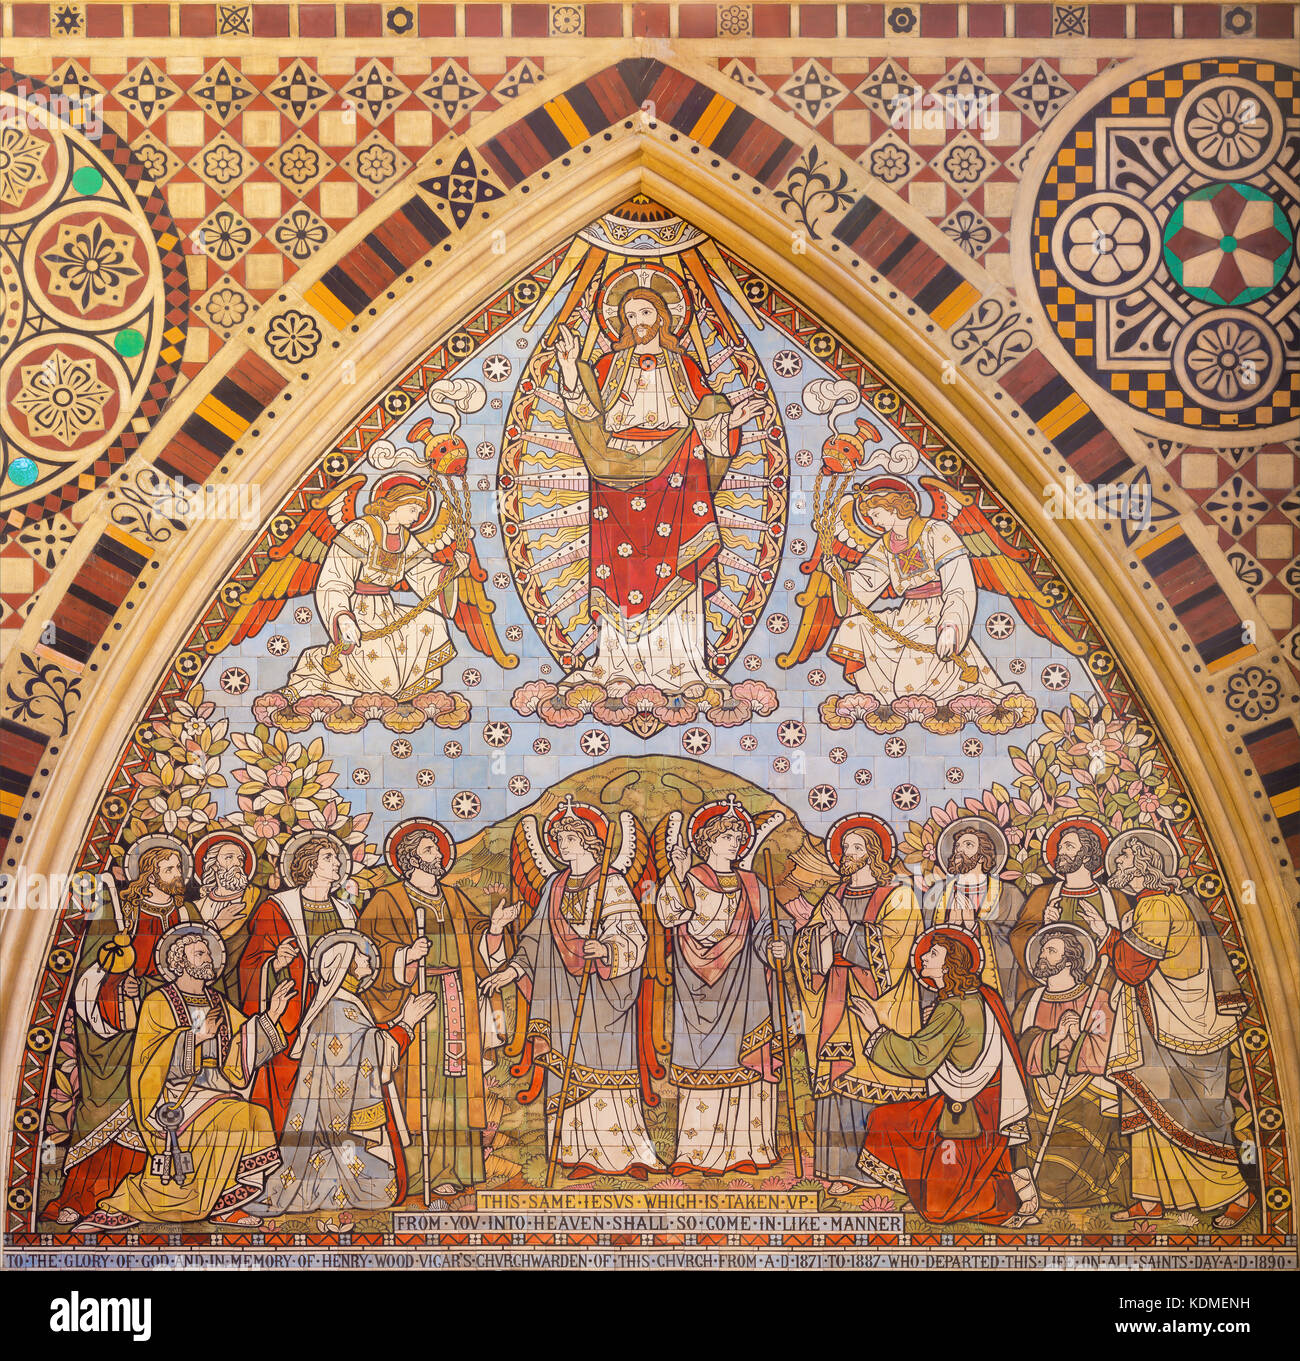 Londra, Gran Bretagna - 15 settembre 2017: il mosaico di piastrelle di ascensione del Signore nella Chiesa di tutti i santi di Matthew Digby Wyatt (1820 - 1877). Foto Stock